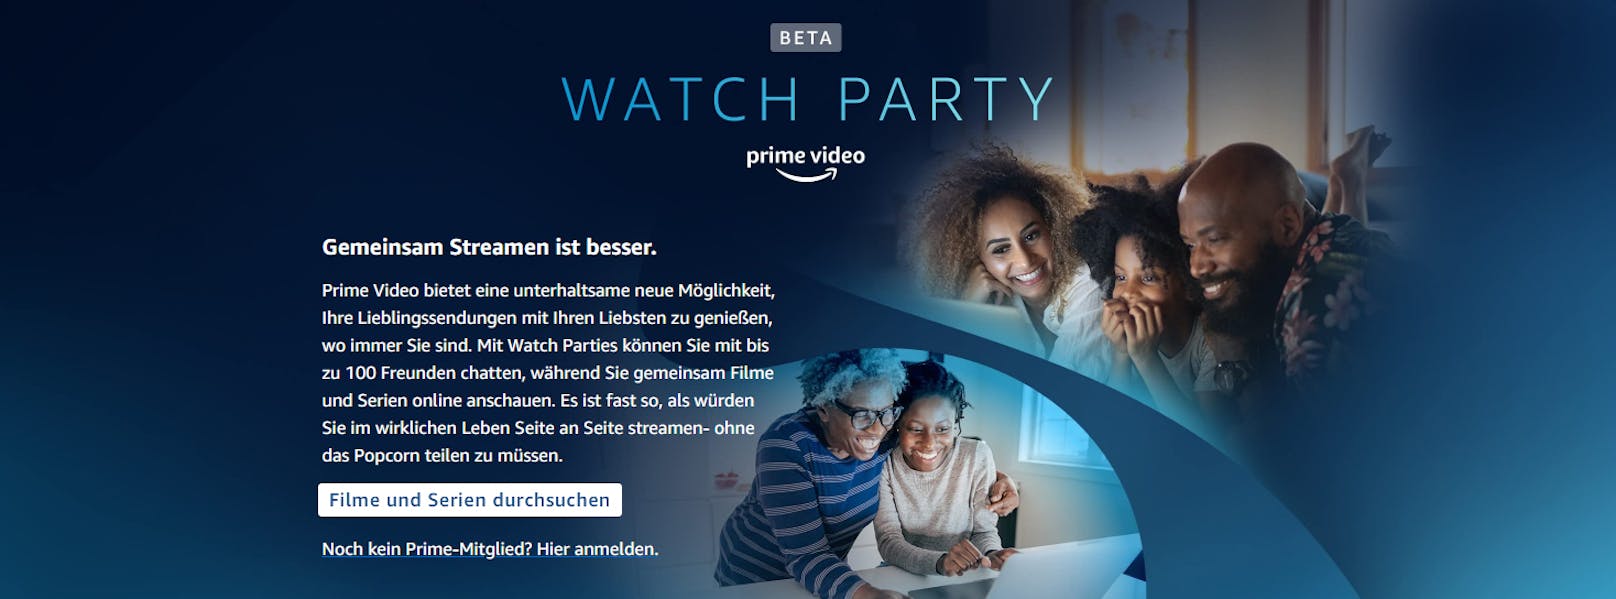 Filme und Serien gemeinsam erleben – Prime Video startet Watch Party in Deutschland.